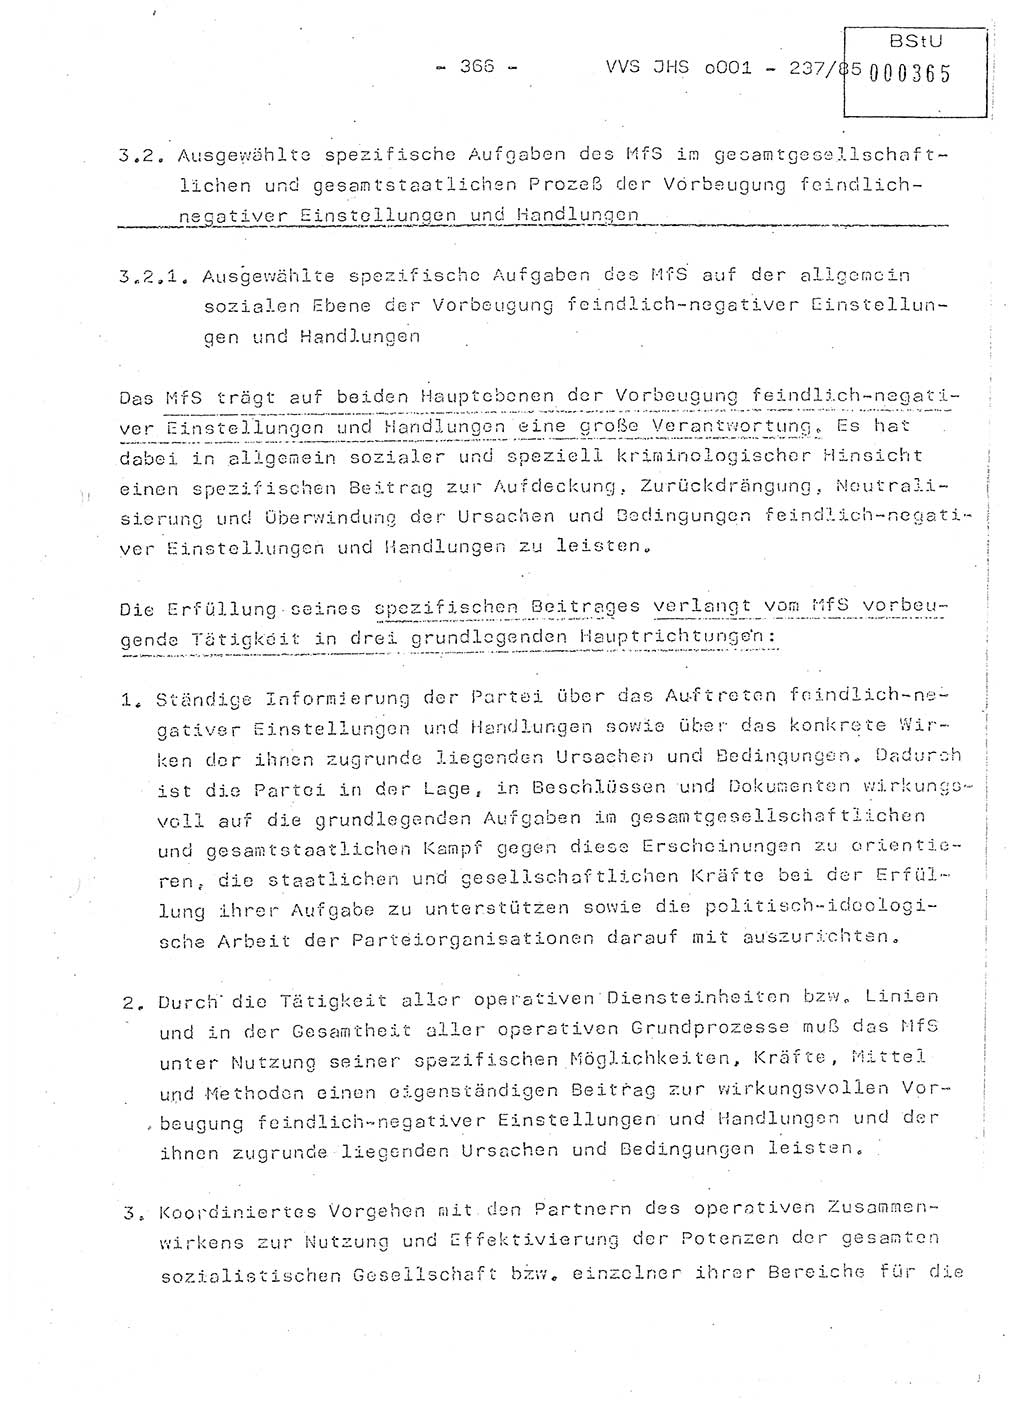 Dissertation Oberstleutnant Peter Jakulski (JHS), Oberstleutnat Christian Rudolph (HA Ⅸ), Major Horst Böttger (ZMD), Major Wolfgang Grüneberg (JHS), Major Albert Meutsch (JHS), Ministerium für Staatssicherheit (MfS) [Deutsche Demokratische Republik (DDR)], Juristische Hochschule (JHS), Vertrauliche Verschlußsache (VVS) o001-237/85, Potsdam 1985, Seite 366 (Diss. MfS DDR JHS VVS o001-237/85 1985, S. 366)